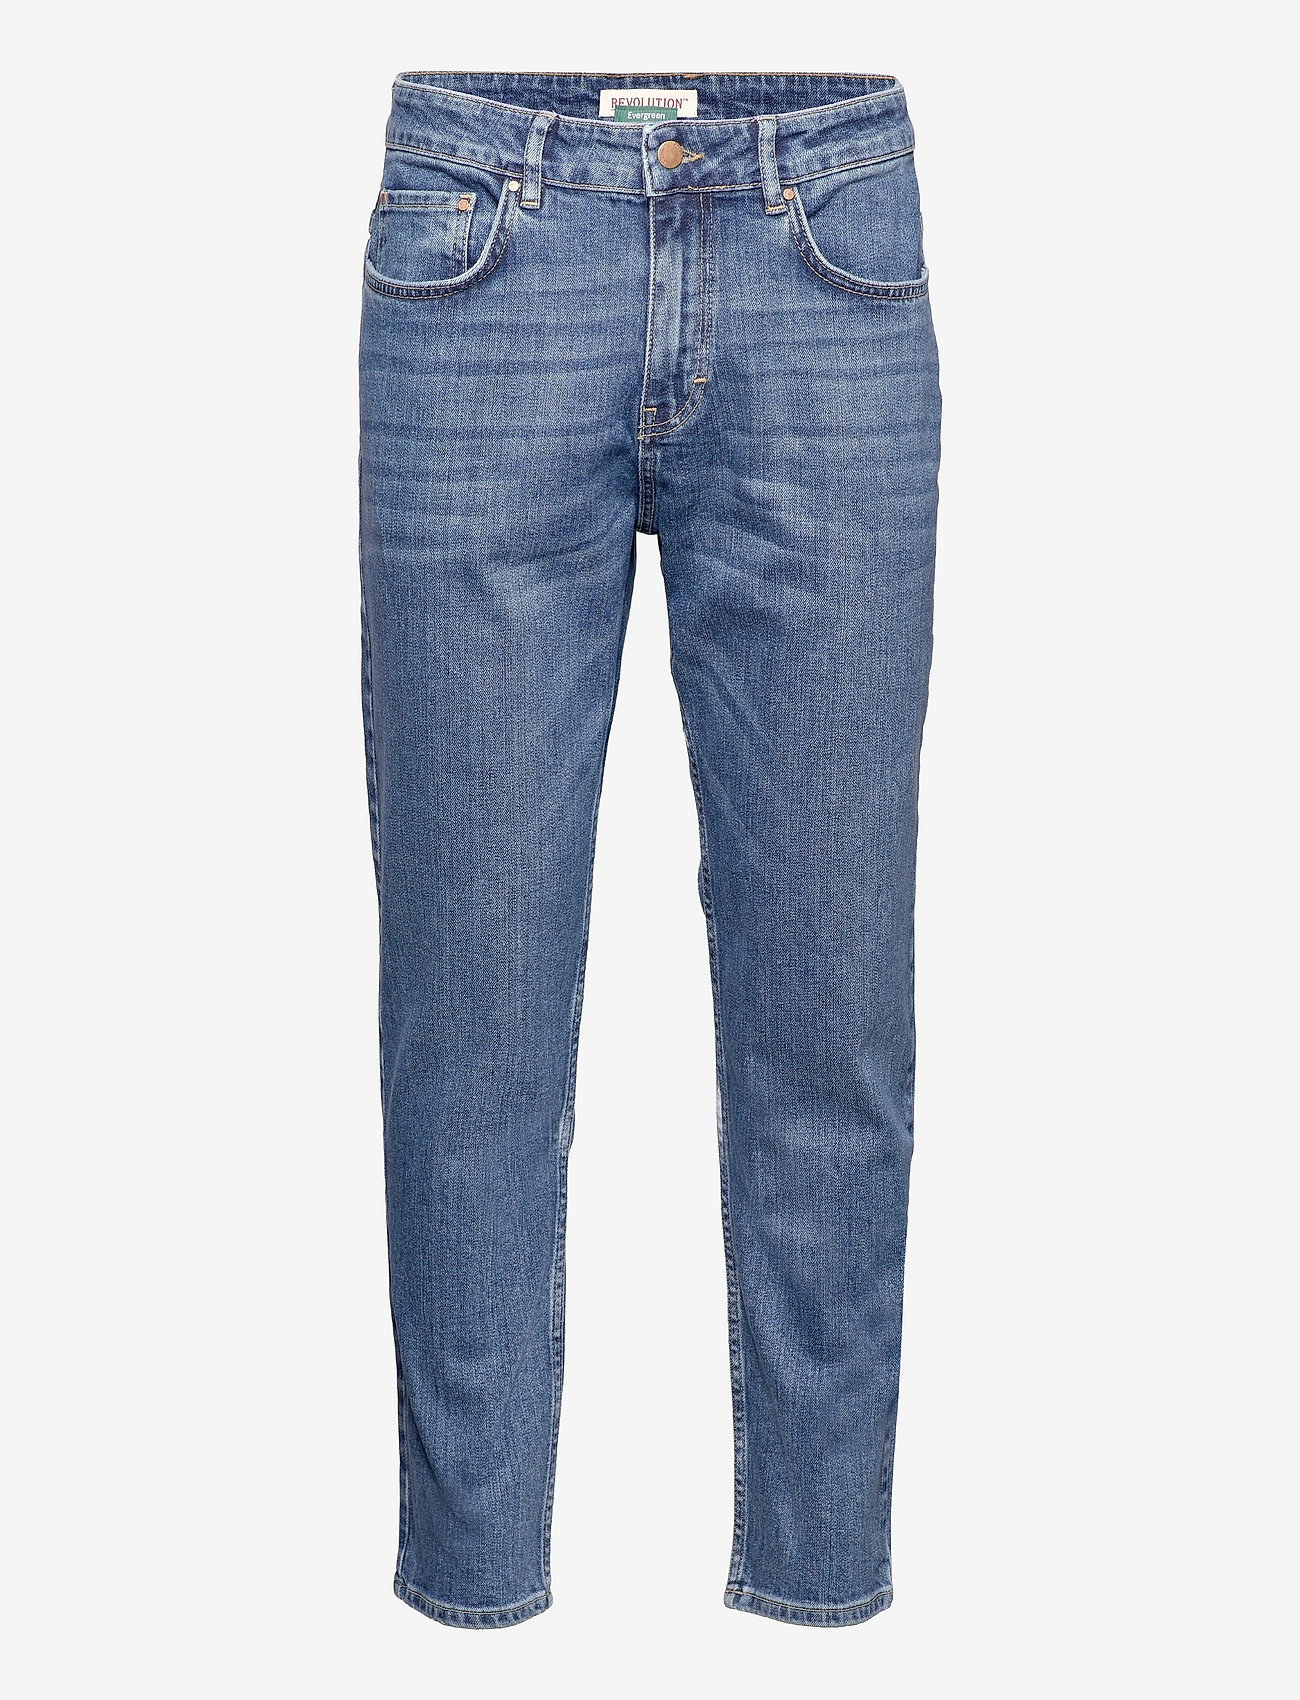 Revolution - Loose fit jeans - laisvo kirpimo džinsai - blue - 0